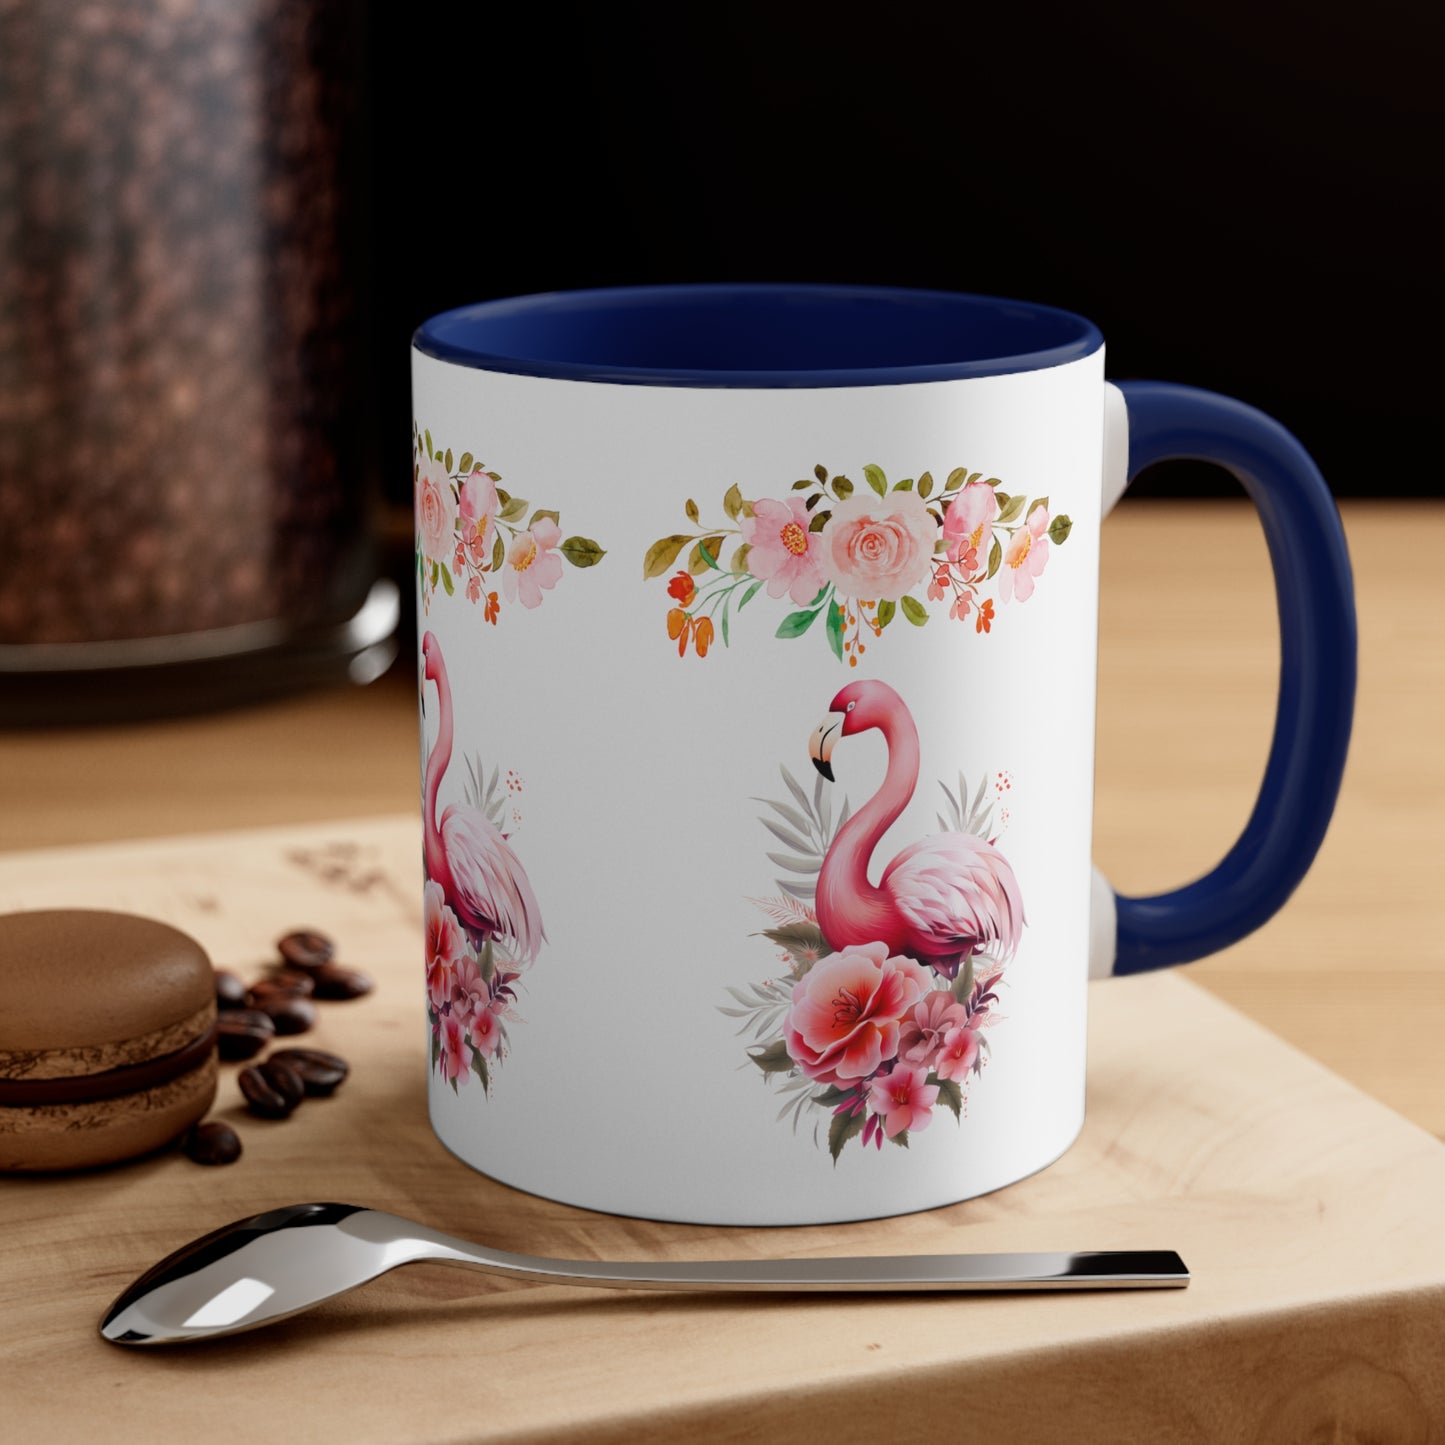 Watercolor Flamingo Mug